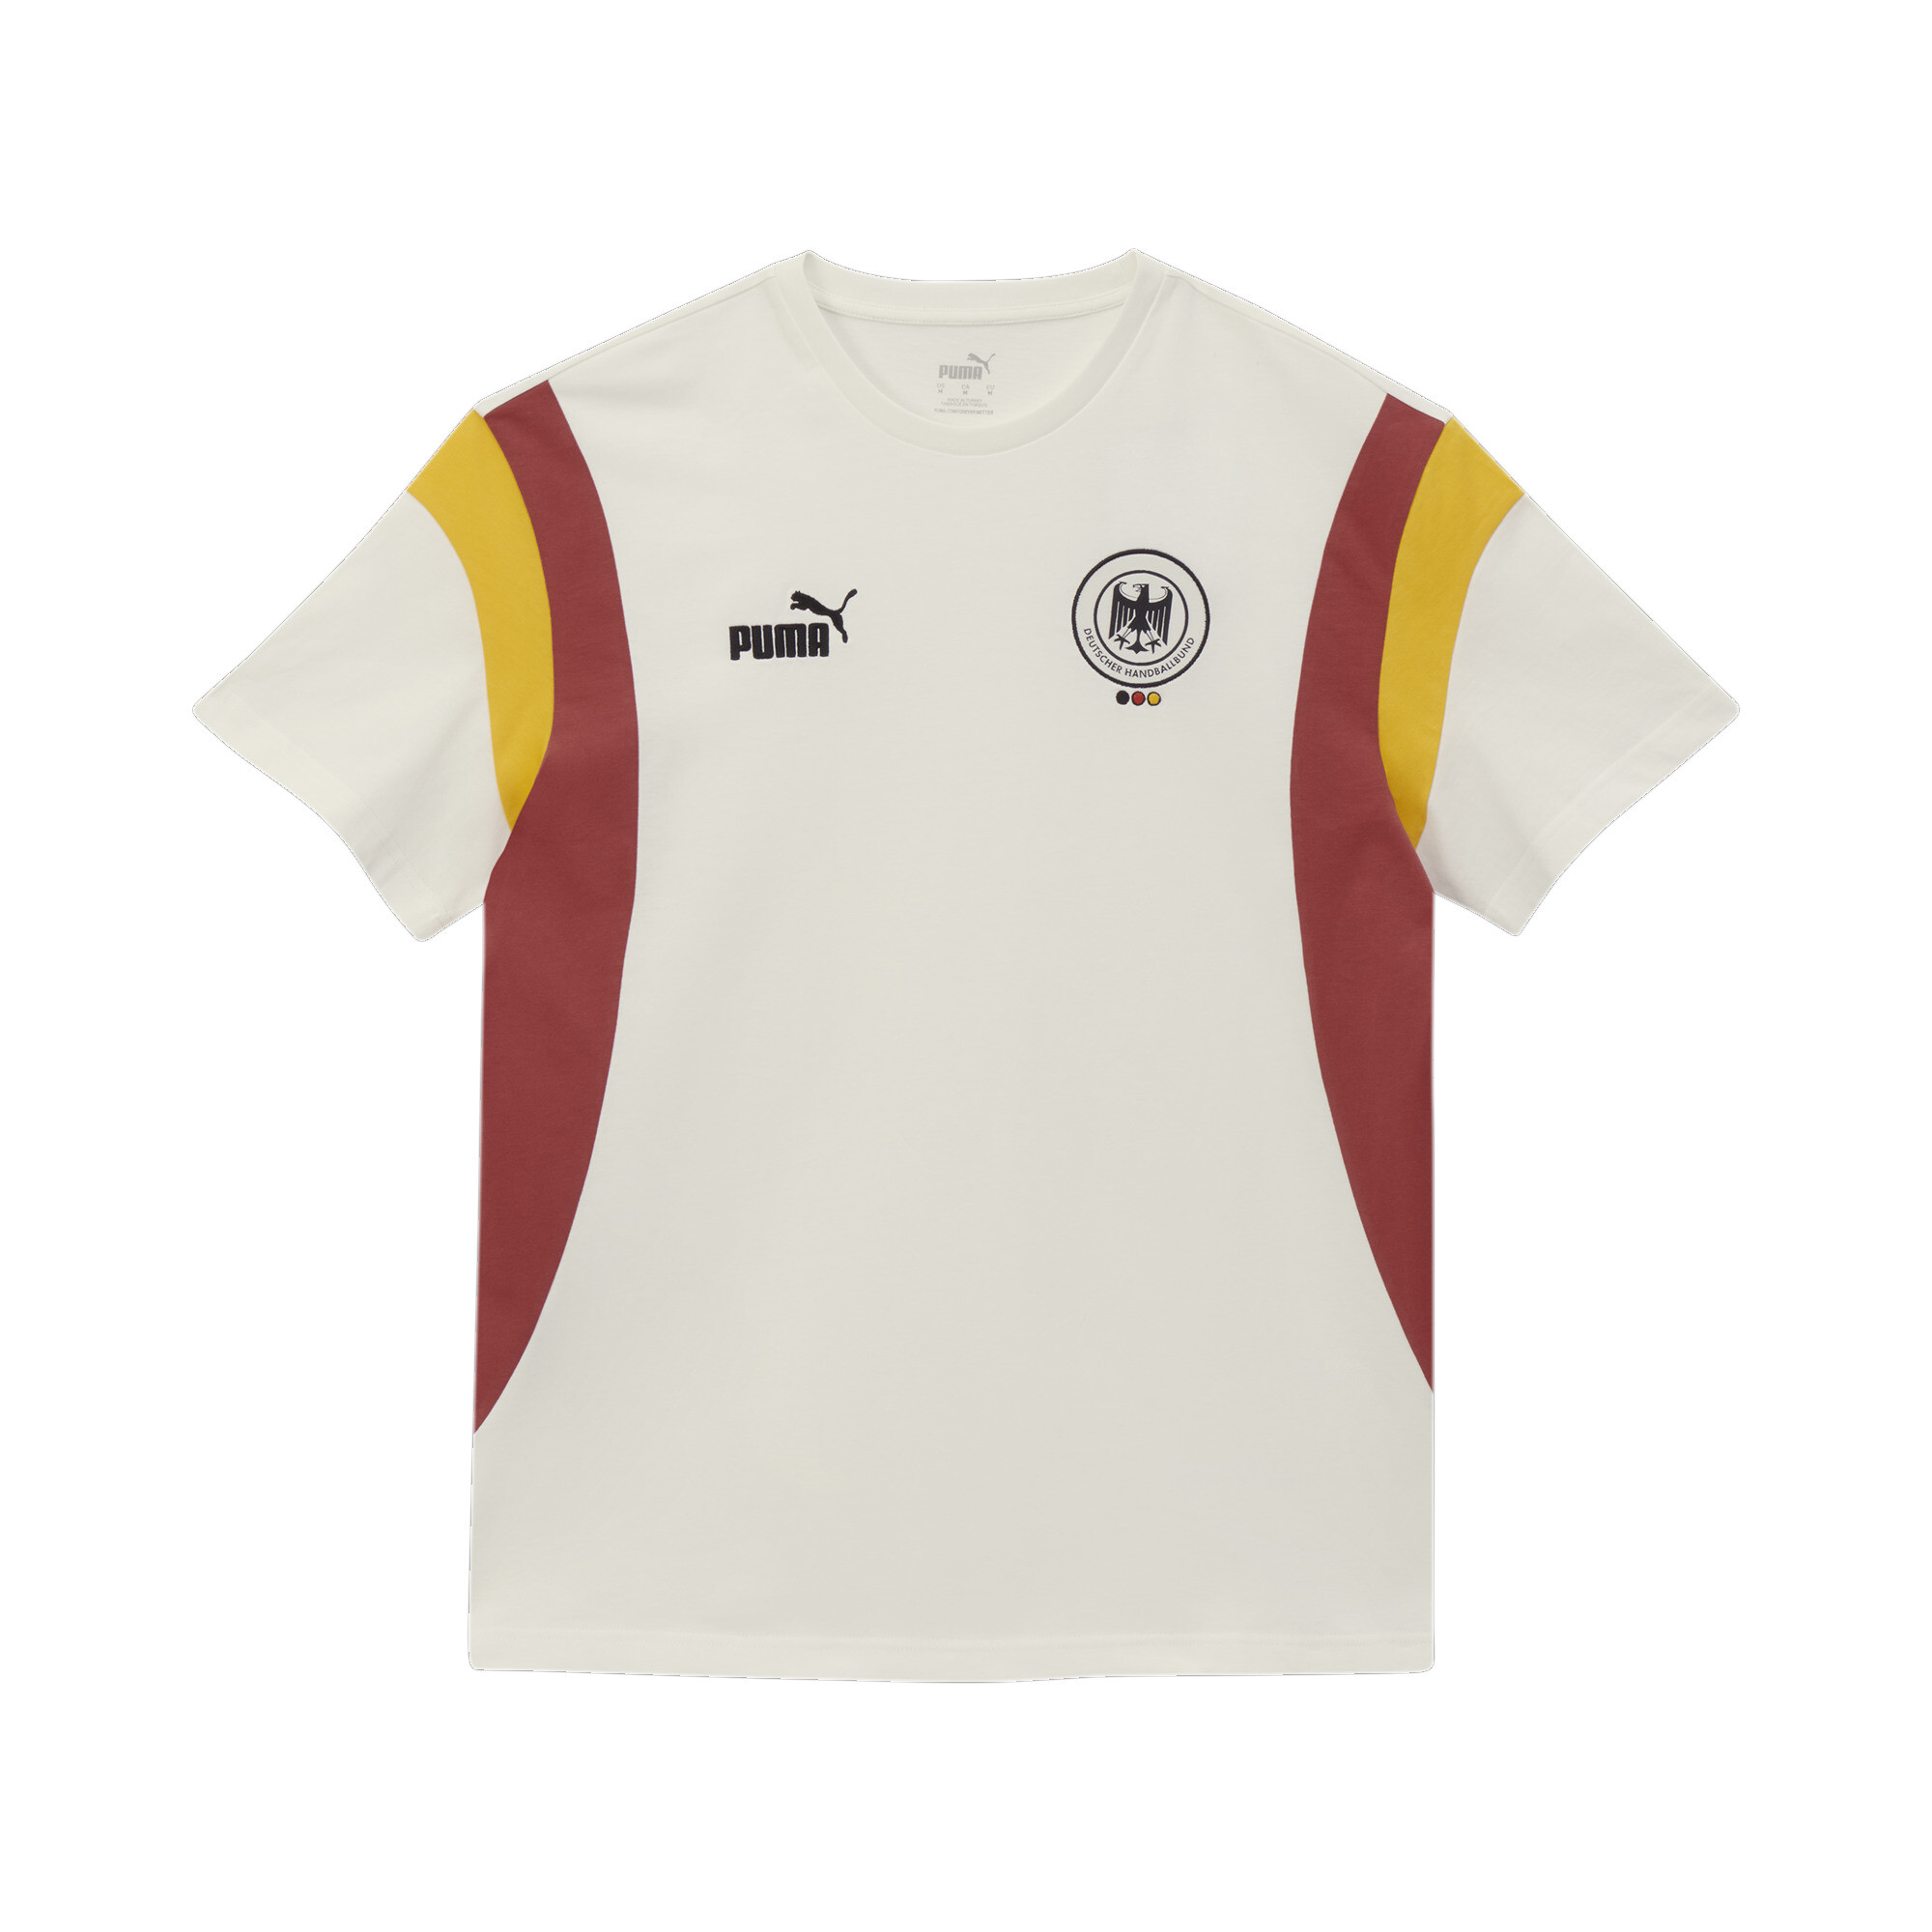 Men's Puma Deutscher Handball Bund Archive's T-Shirt, White, Size XS, German